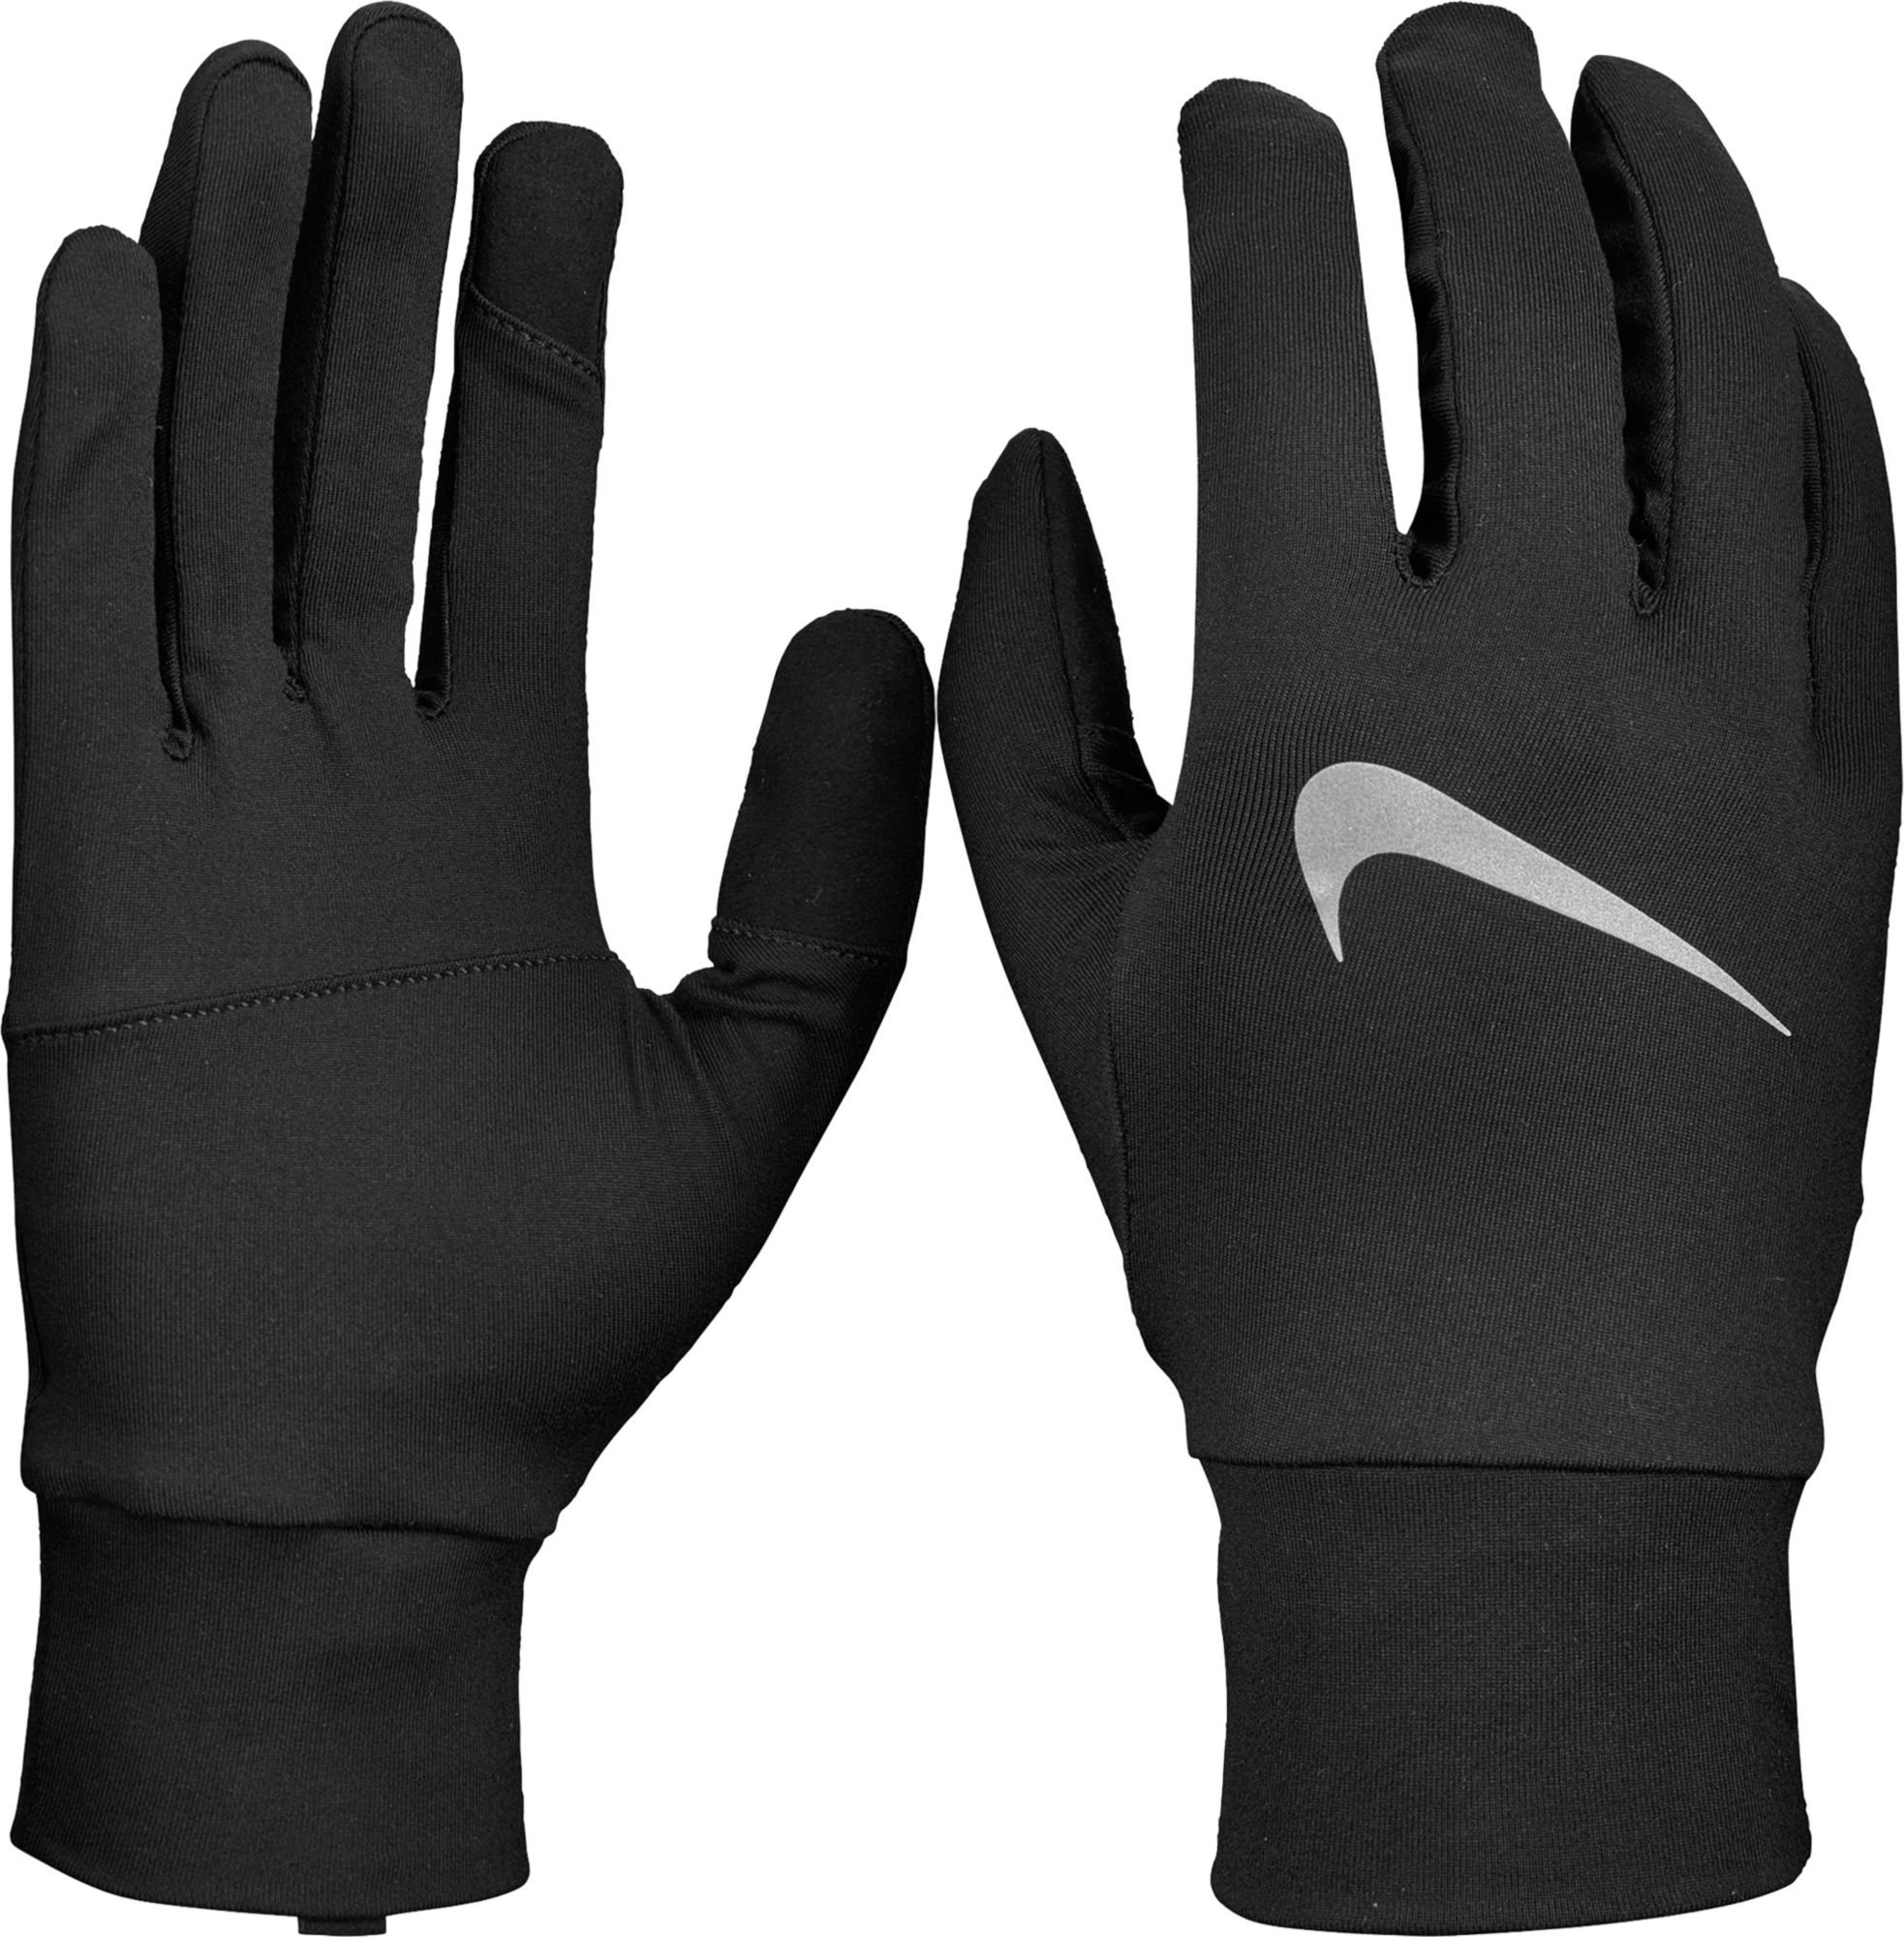 Nike Winter Gloves \u0026 Mittens | Best 